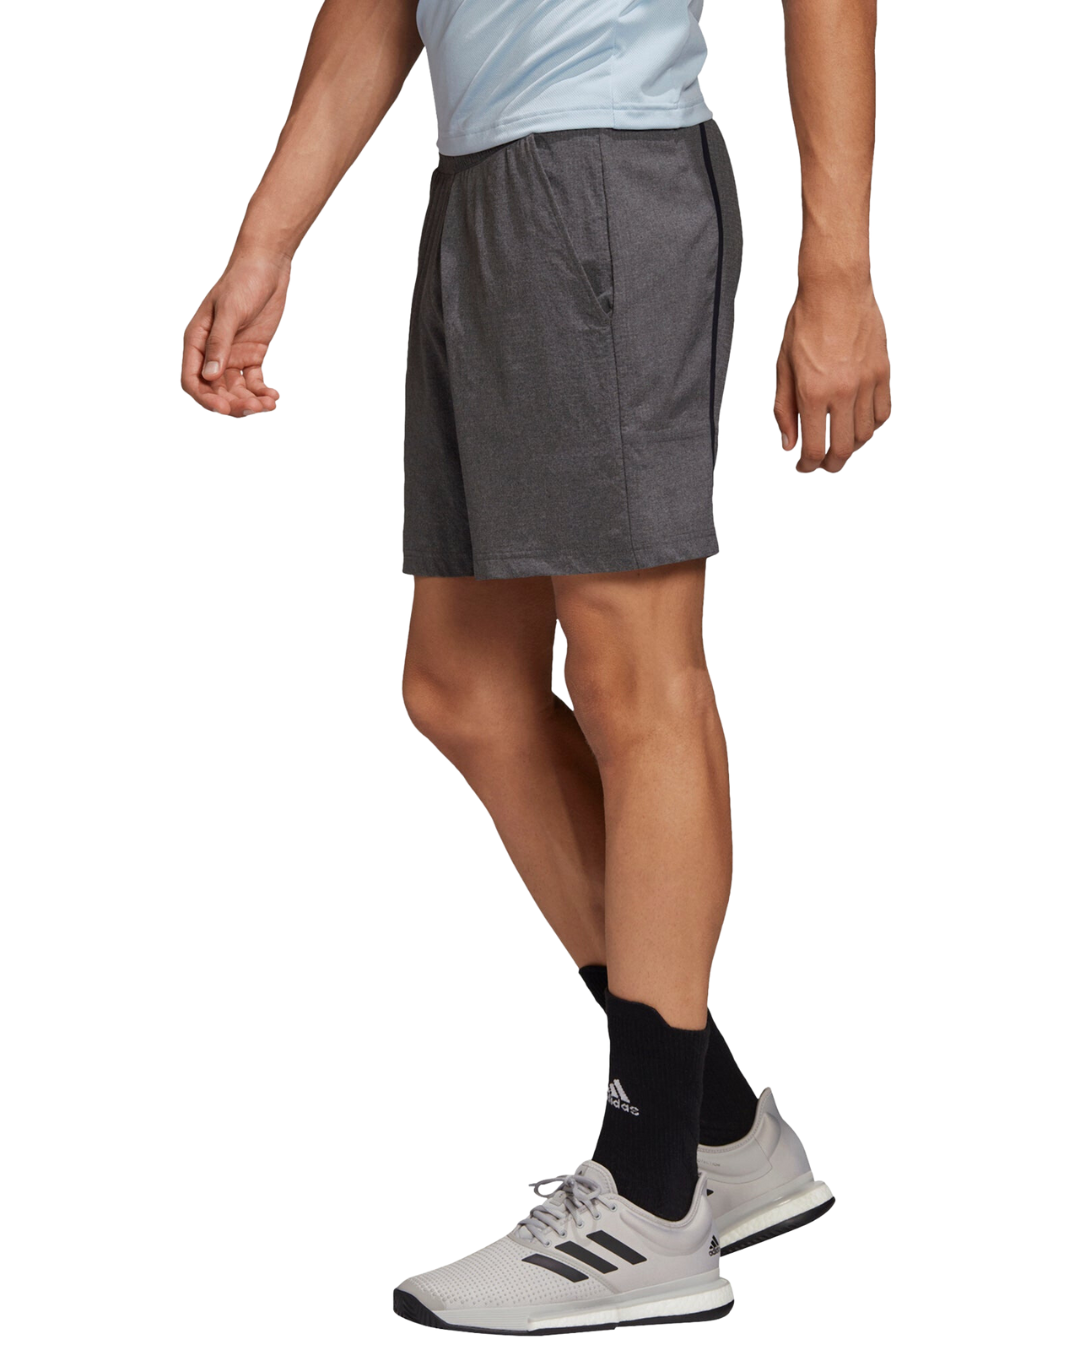 Adidas Mens Ergo Melange Shorts